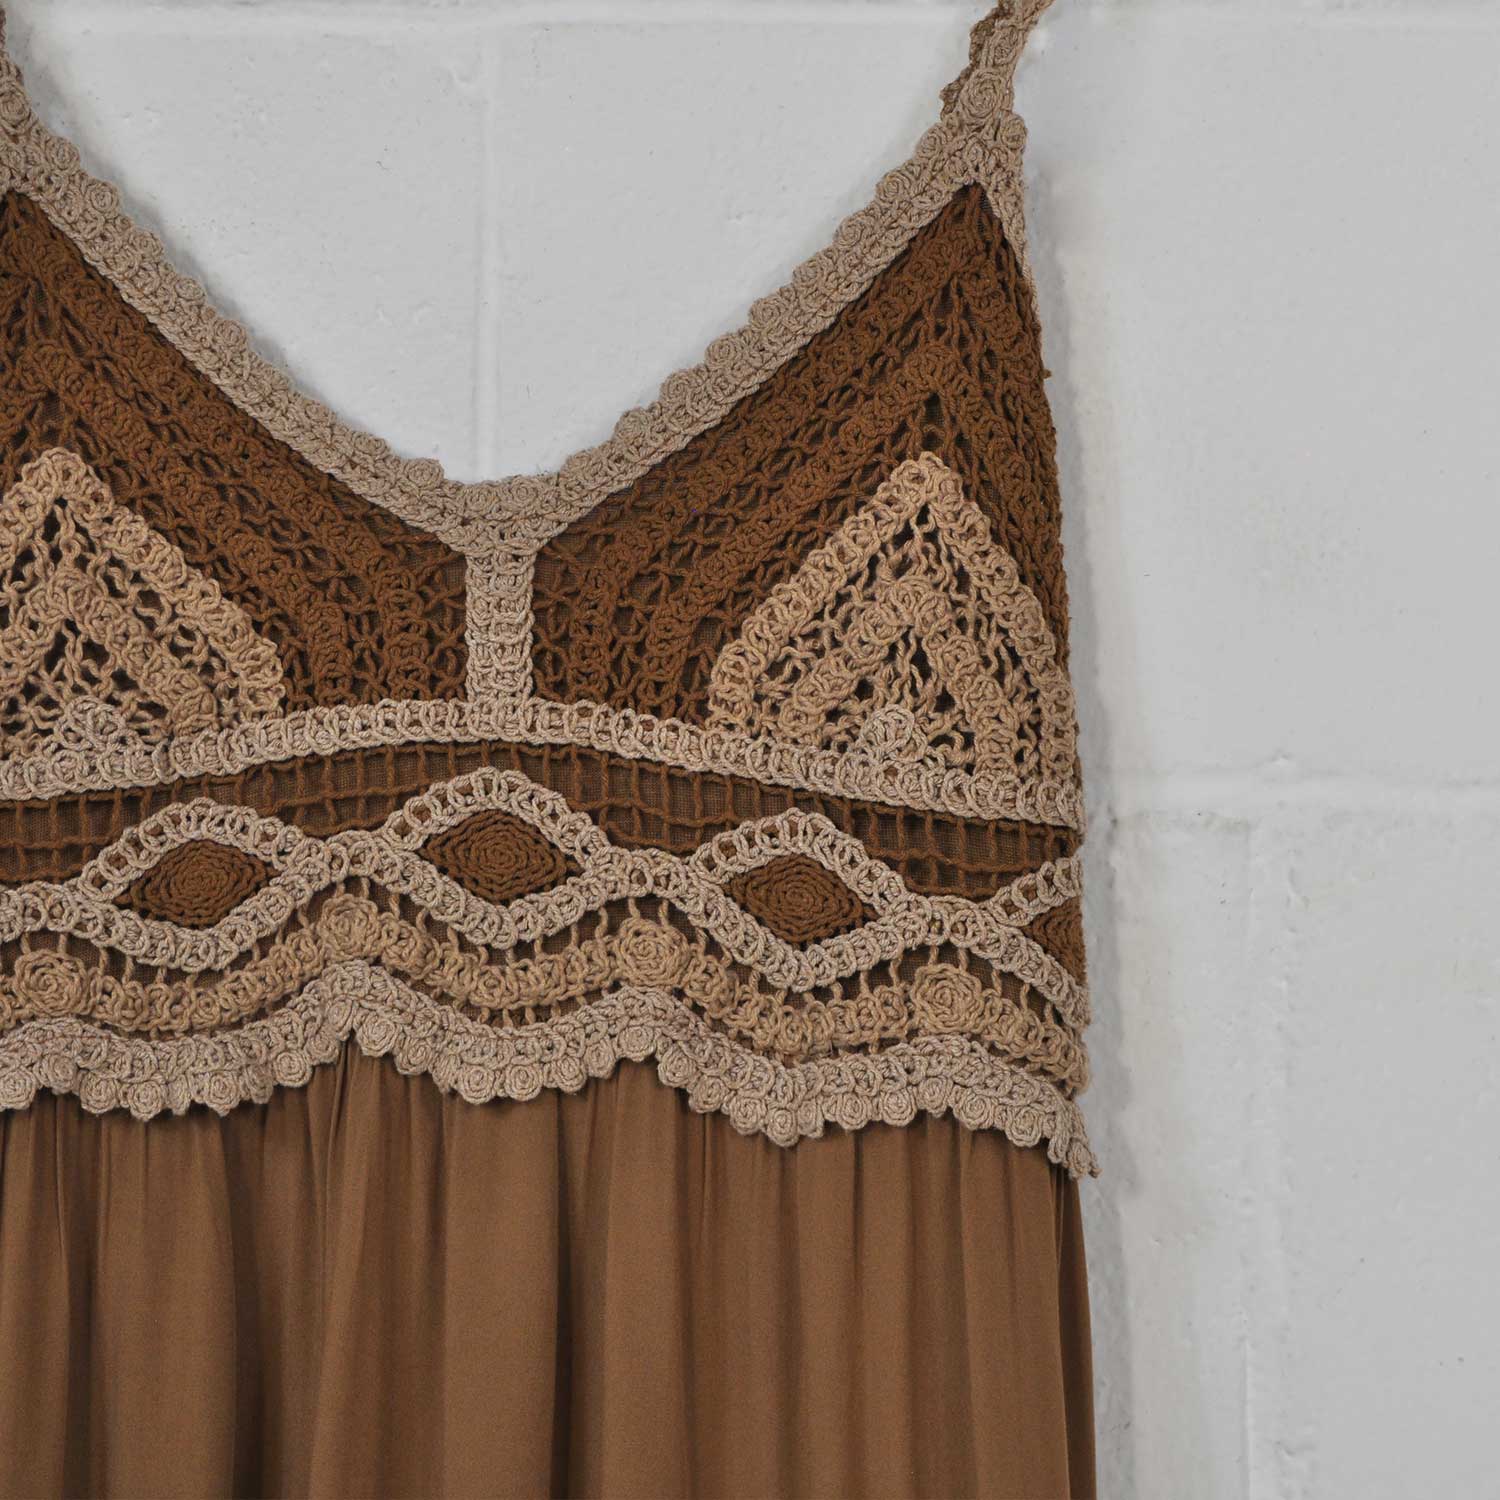 Brown crochet dress